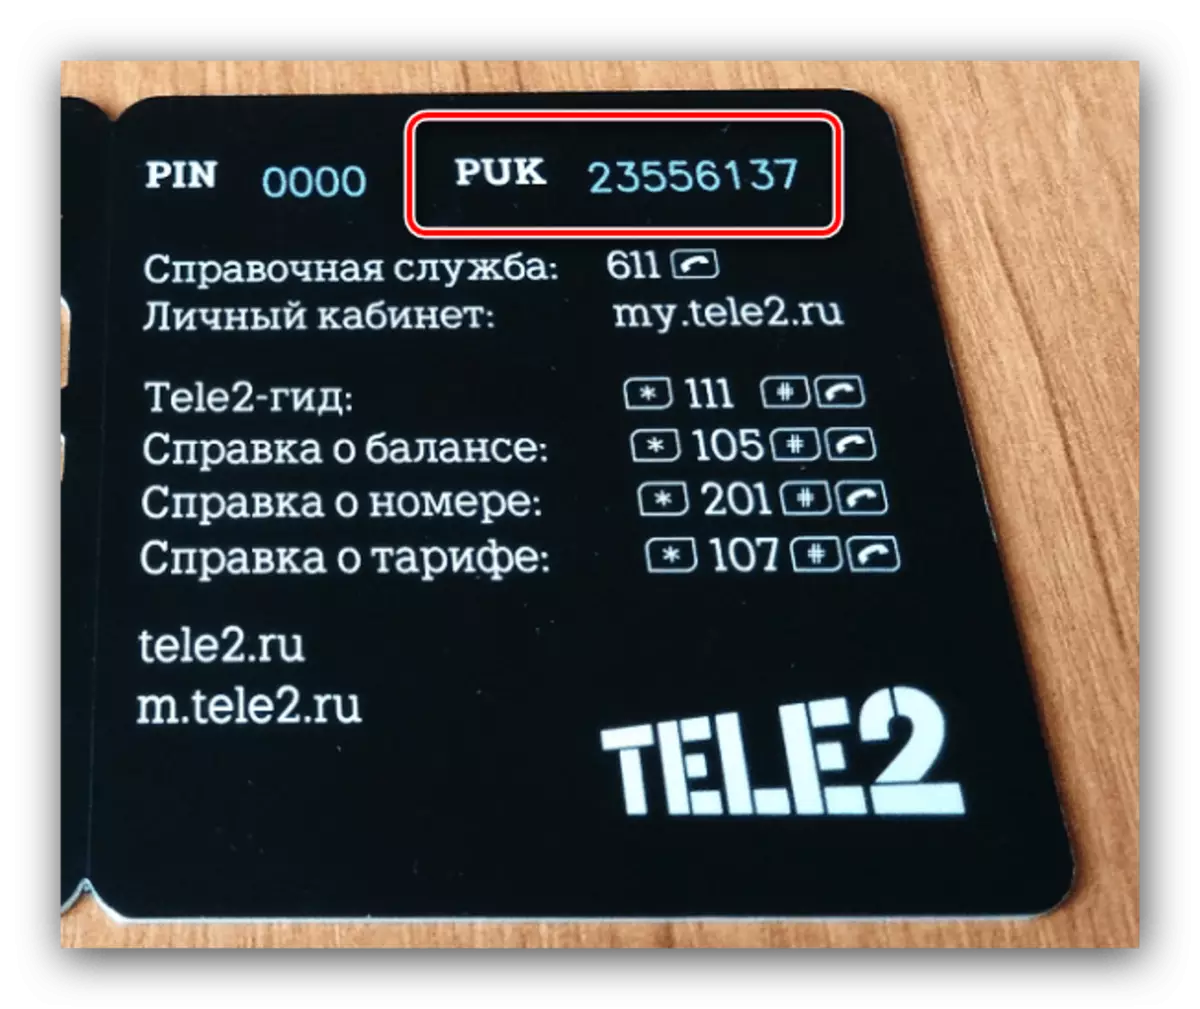 Fannt de PUK Code eraus fir de PIN Code op Android zréckzesetzen